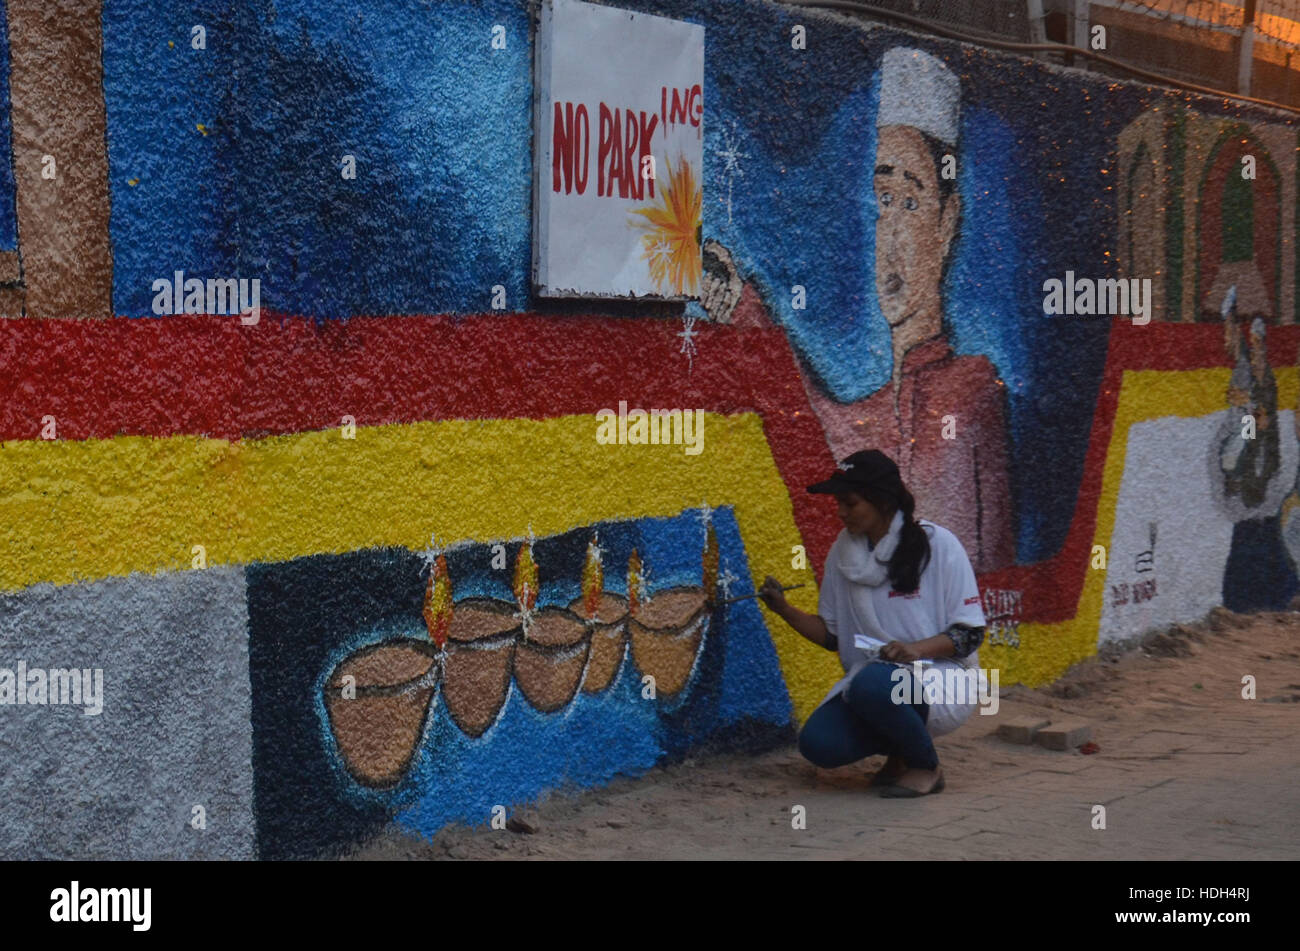 Lahore, Pakistan. Dec 11, 2016. Étudiant pakistanais de collage de national arts(SCN) décorer un mur le long d'une rue donne la touche finale à une fresque sur un mur, au cours d'une campagne intitulée l'Art de rue au Pakistan. Street Art Pakistan est une initiative prise par une équipe d'artistes et d'un groupe appelé les murs de réforme au Pakistan pour tenter d'éliminer les pratiques illégales de graffiti, par peinture des murs avec des thèmes positifs illustrant des histoires colorées du Pakistan. Credit : Rana Sajid Hussain/Pacific Press/Alamy Live News Banque D'Images